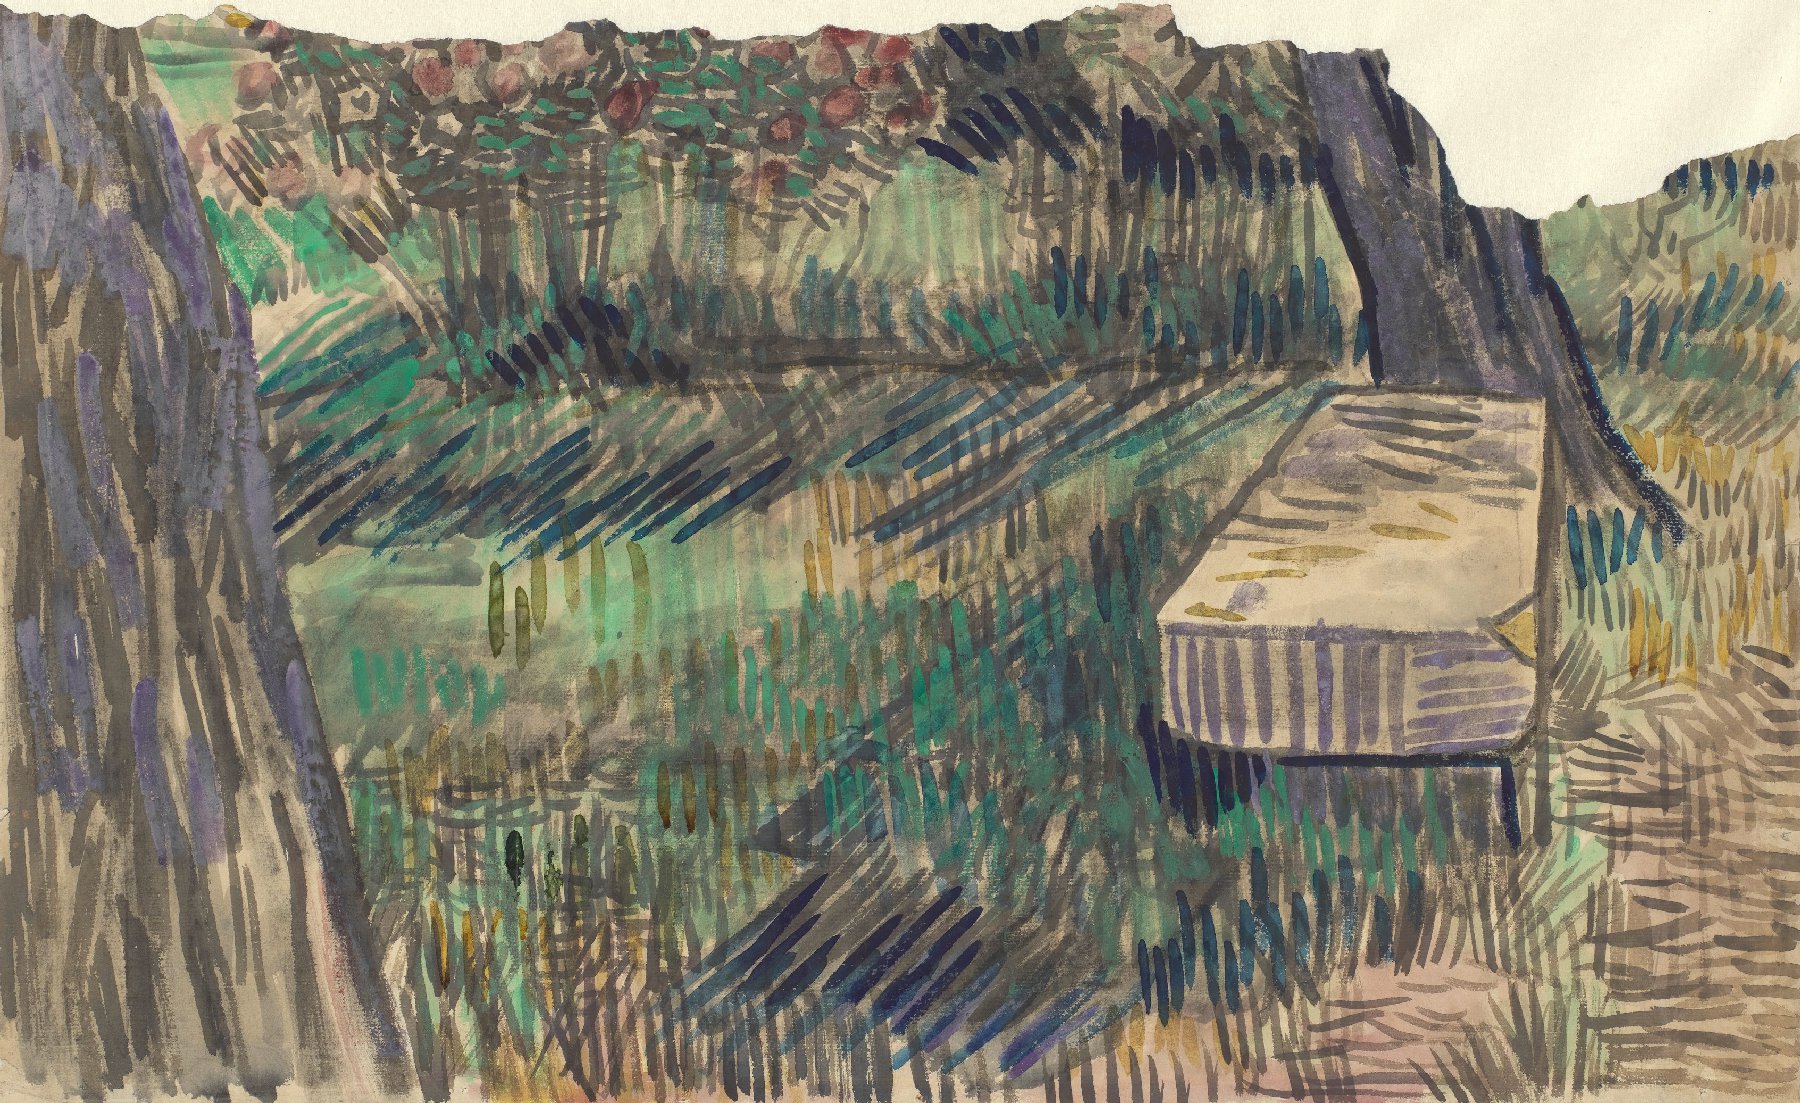 Stenen bank in de tuin van de inrichting Vincent van Gogh (1853 - 1890), Saint-Rémy-de-Provence, mei-juni 1889